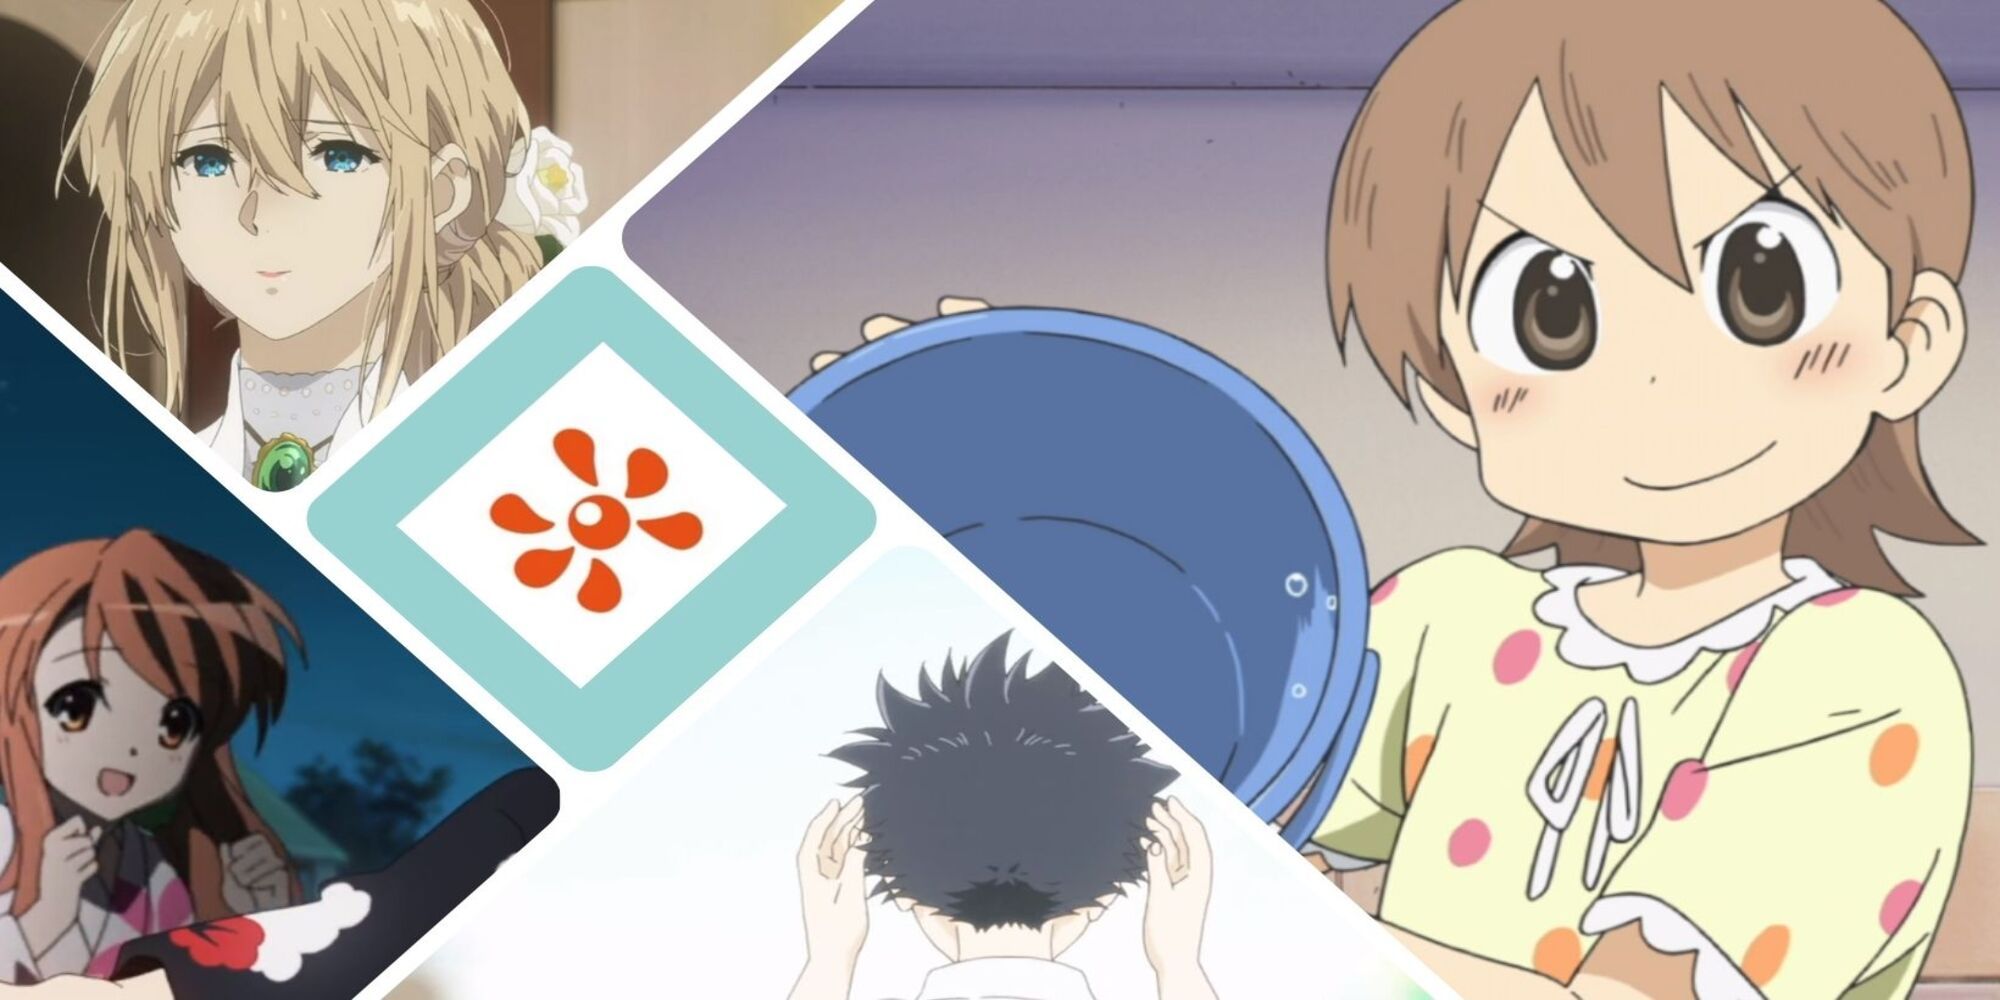 Review: Free! – Iwatobi Swim Club – Anime Bird